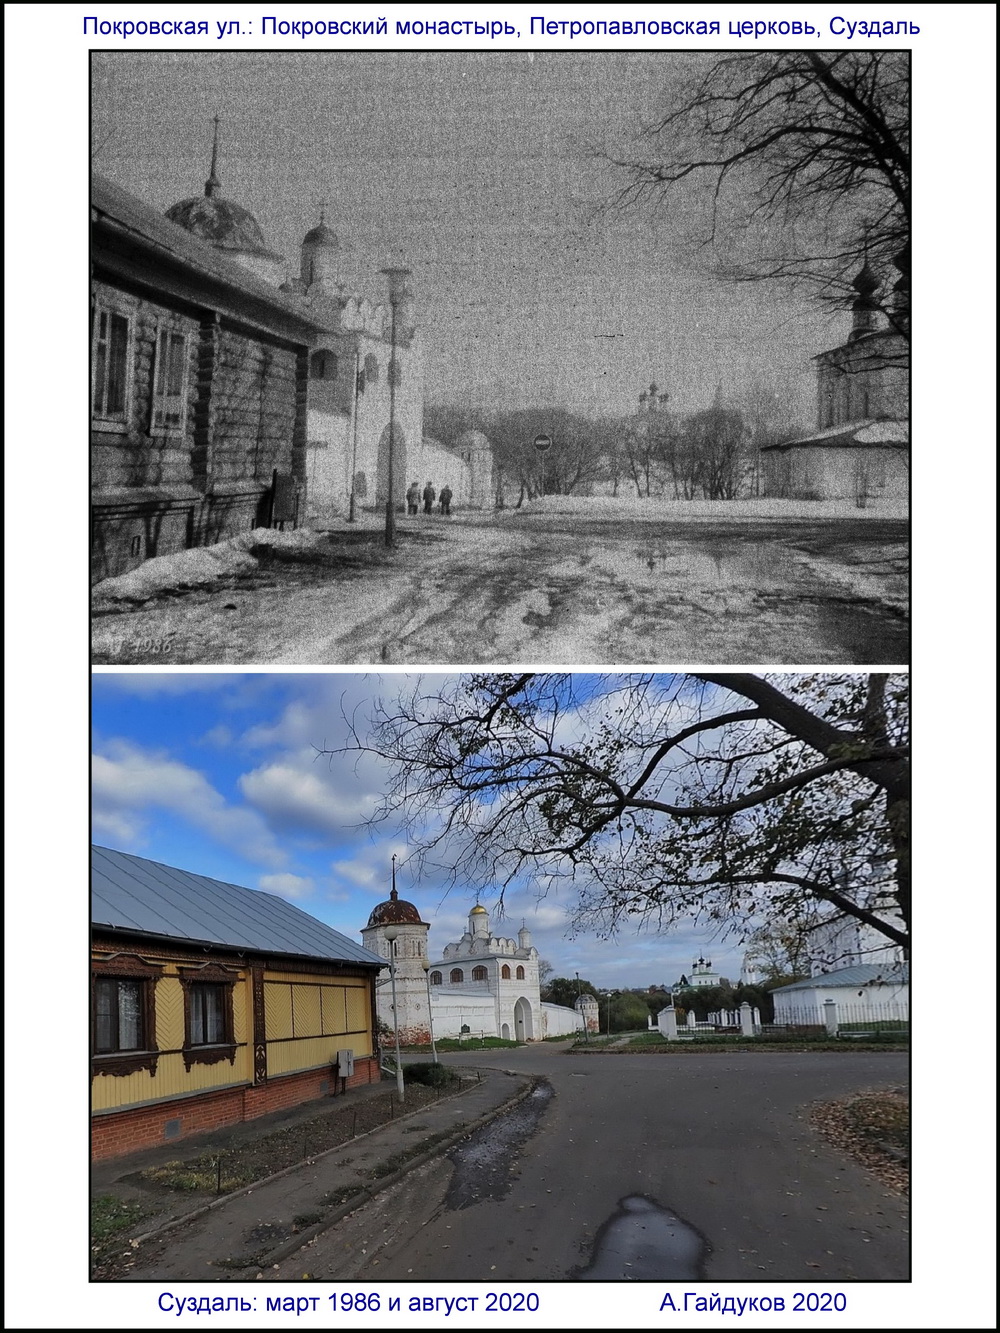 Два взгляда на Суздаль с перерывом в треть века 1986 и 2020  Вид на Покровский монастырь и Петропавловскую церковь 